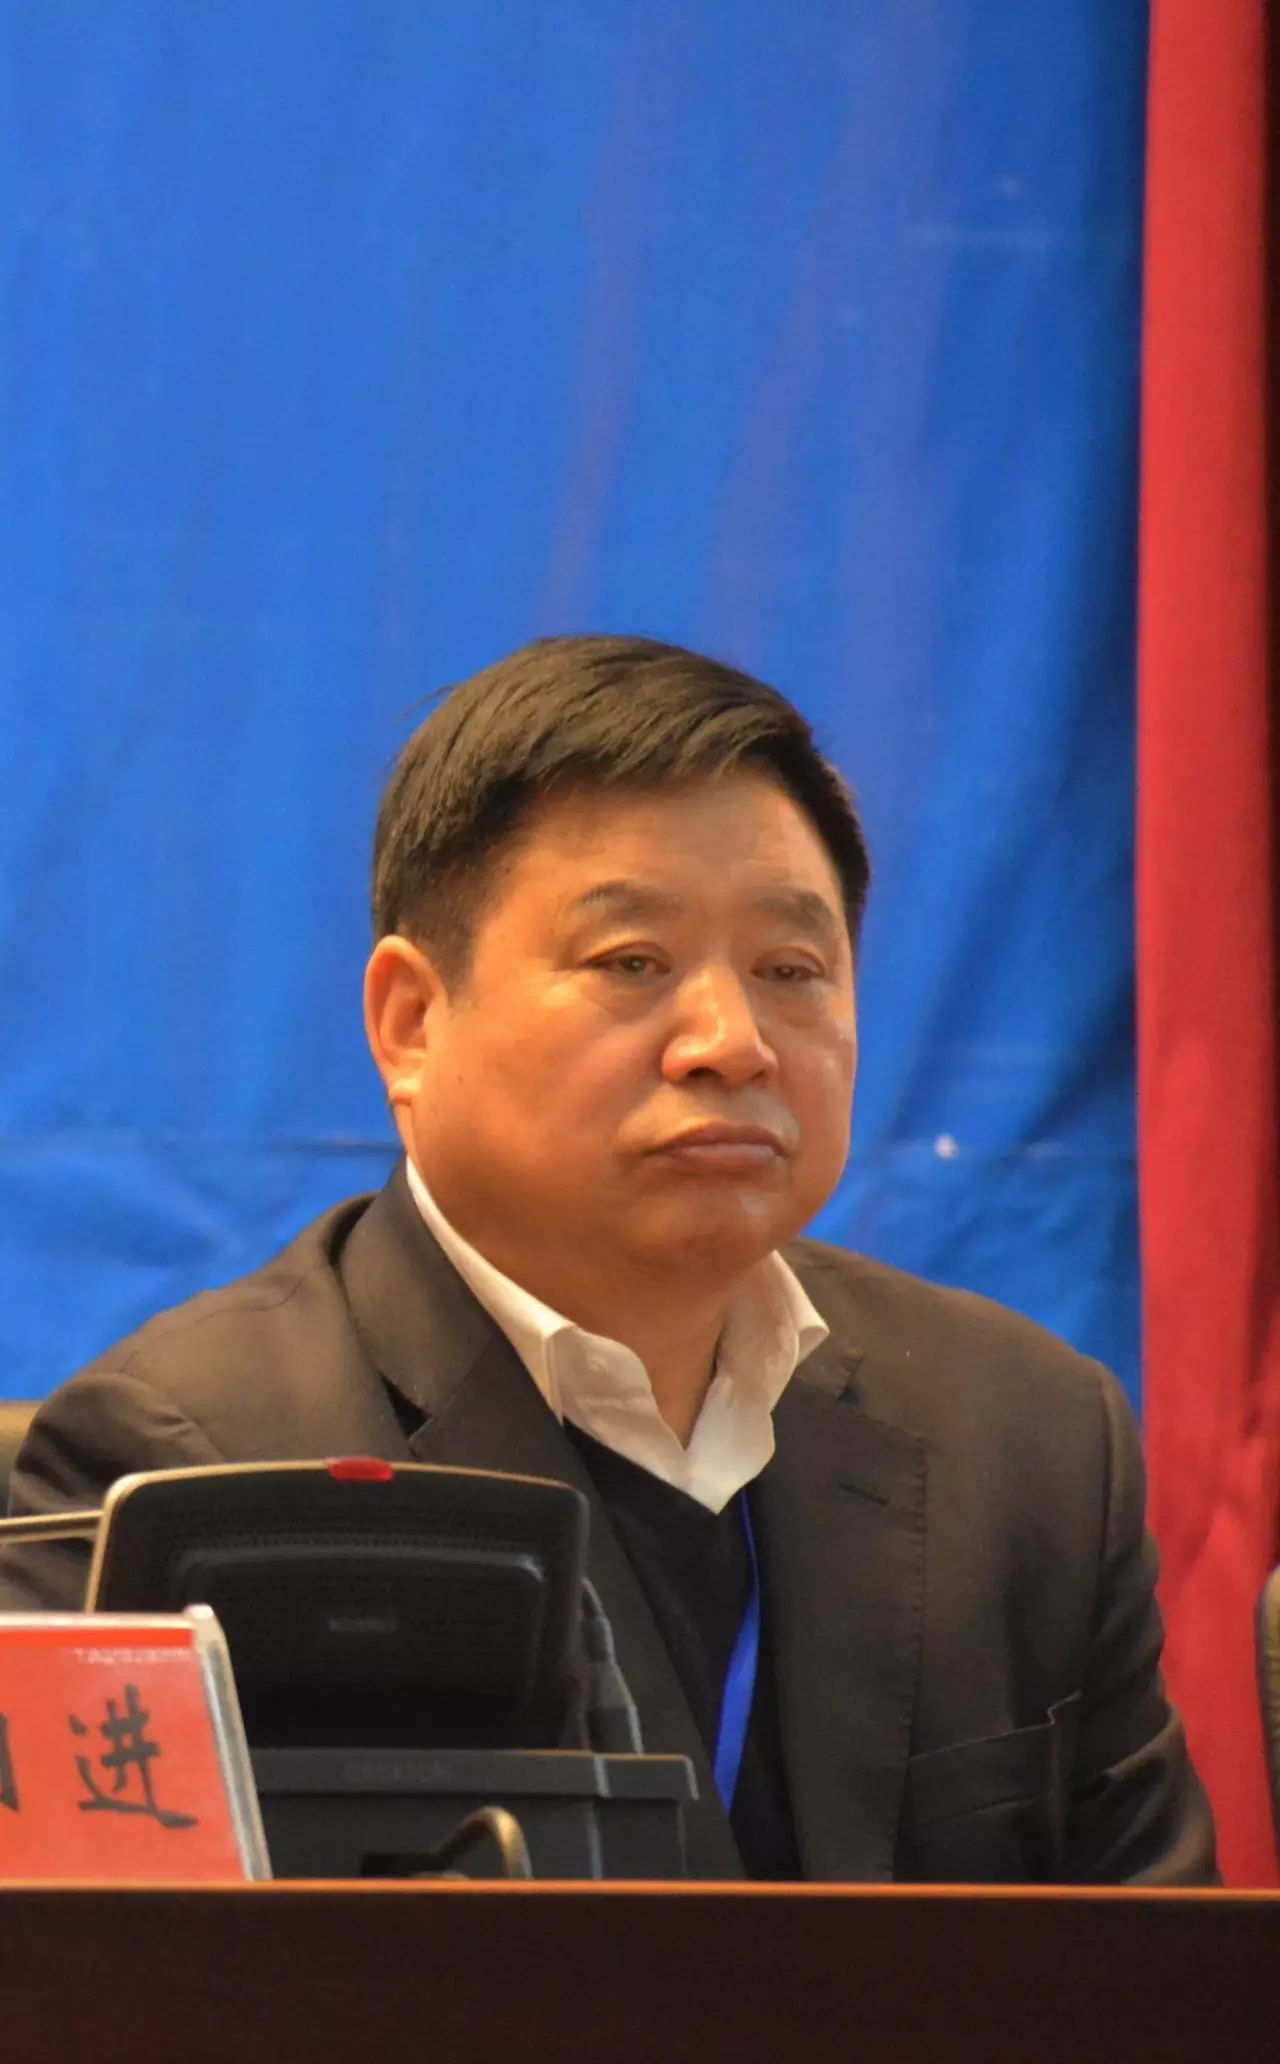 无锡正大生物股份有限公司总裁叶峰先先生出席颁奖仪式并致辞.